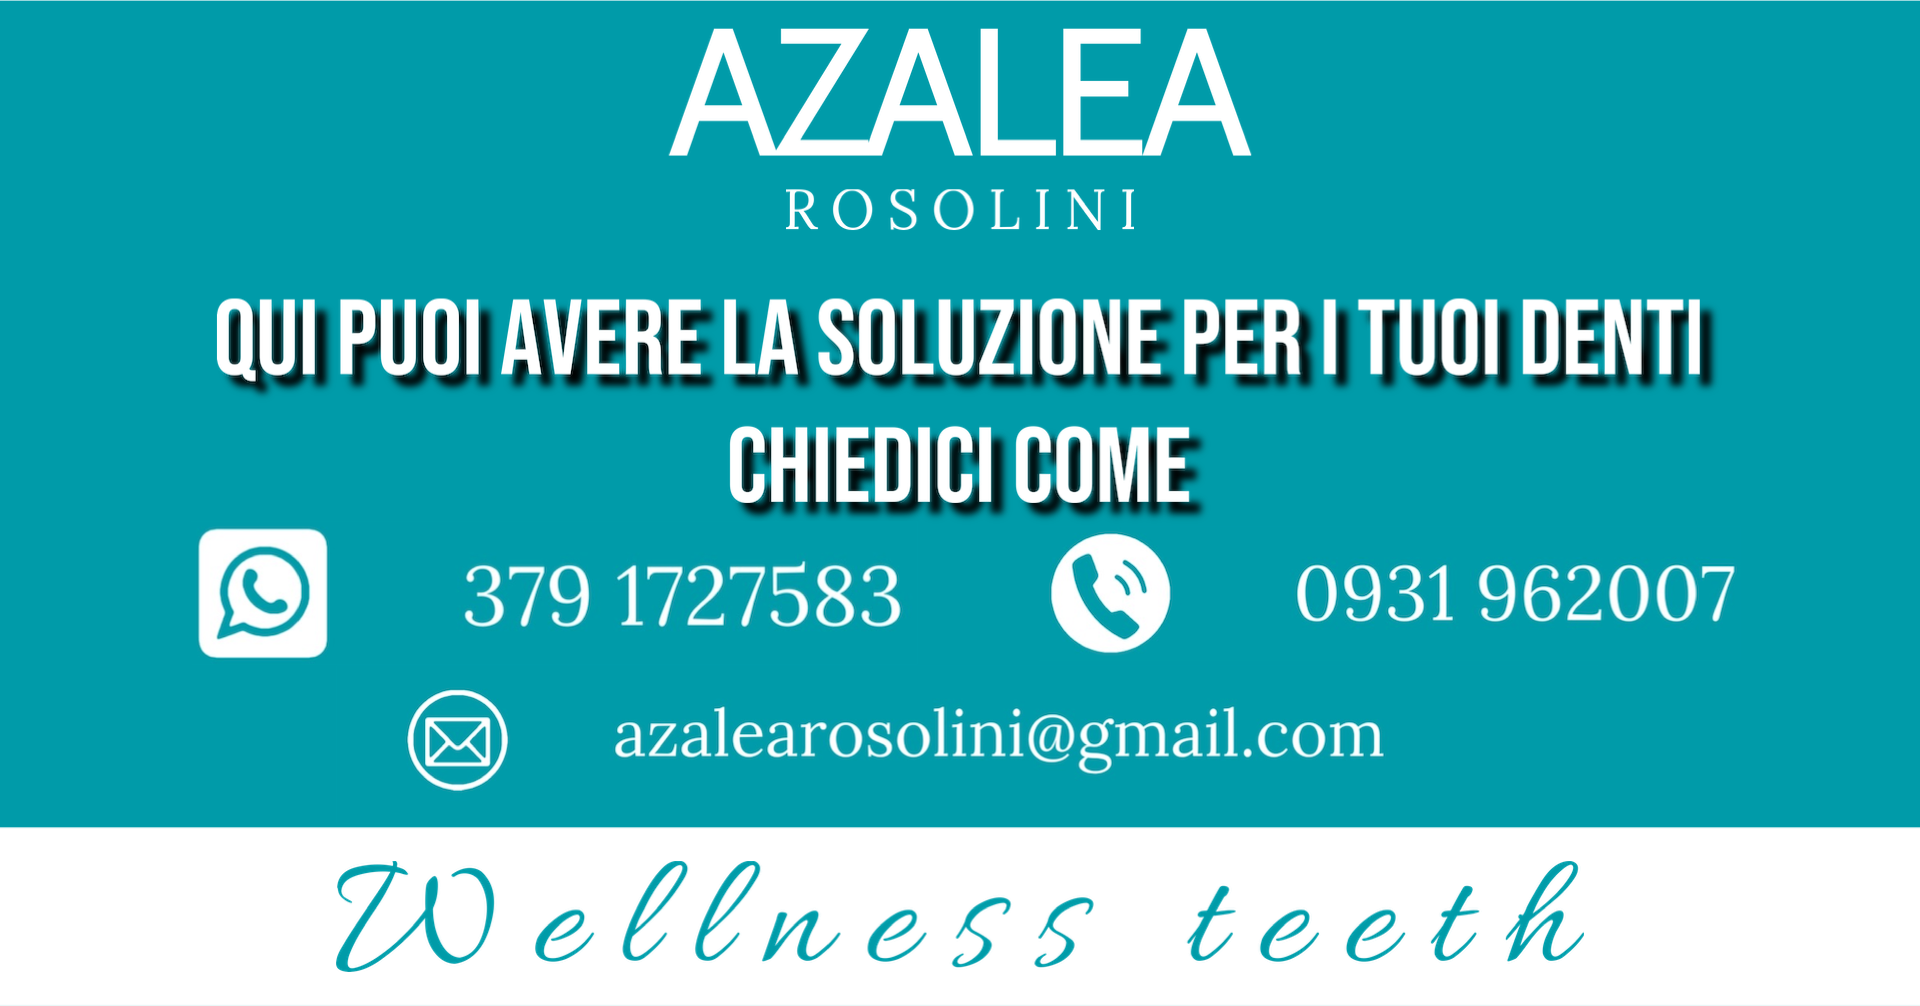 Una soluzione per i tuoi denti: azalea Rosolini